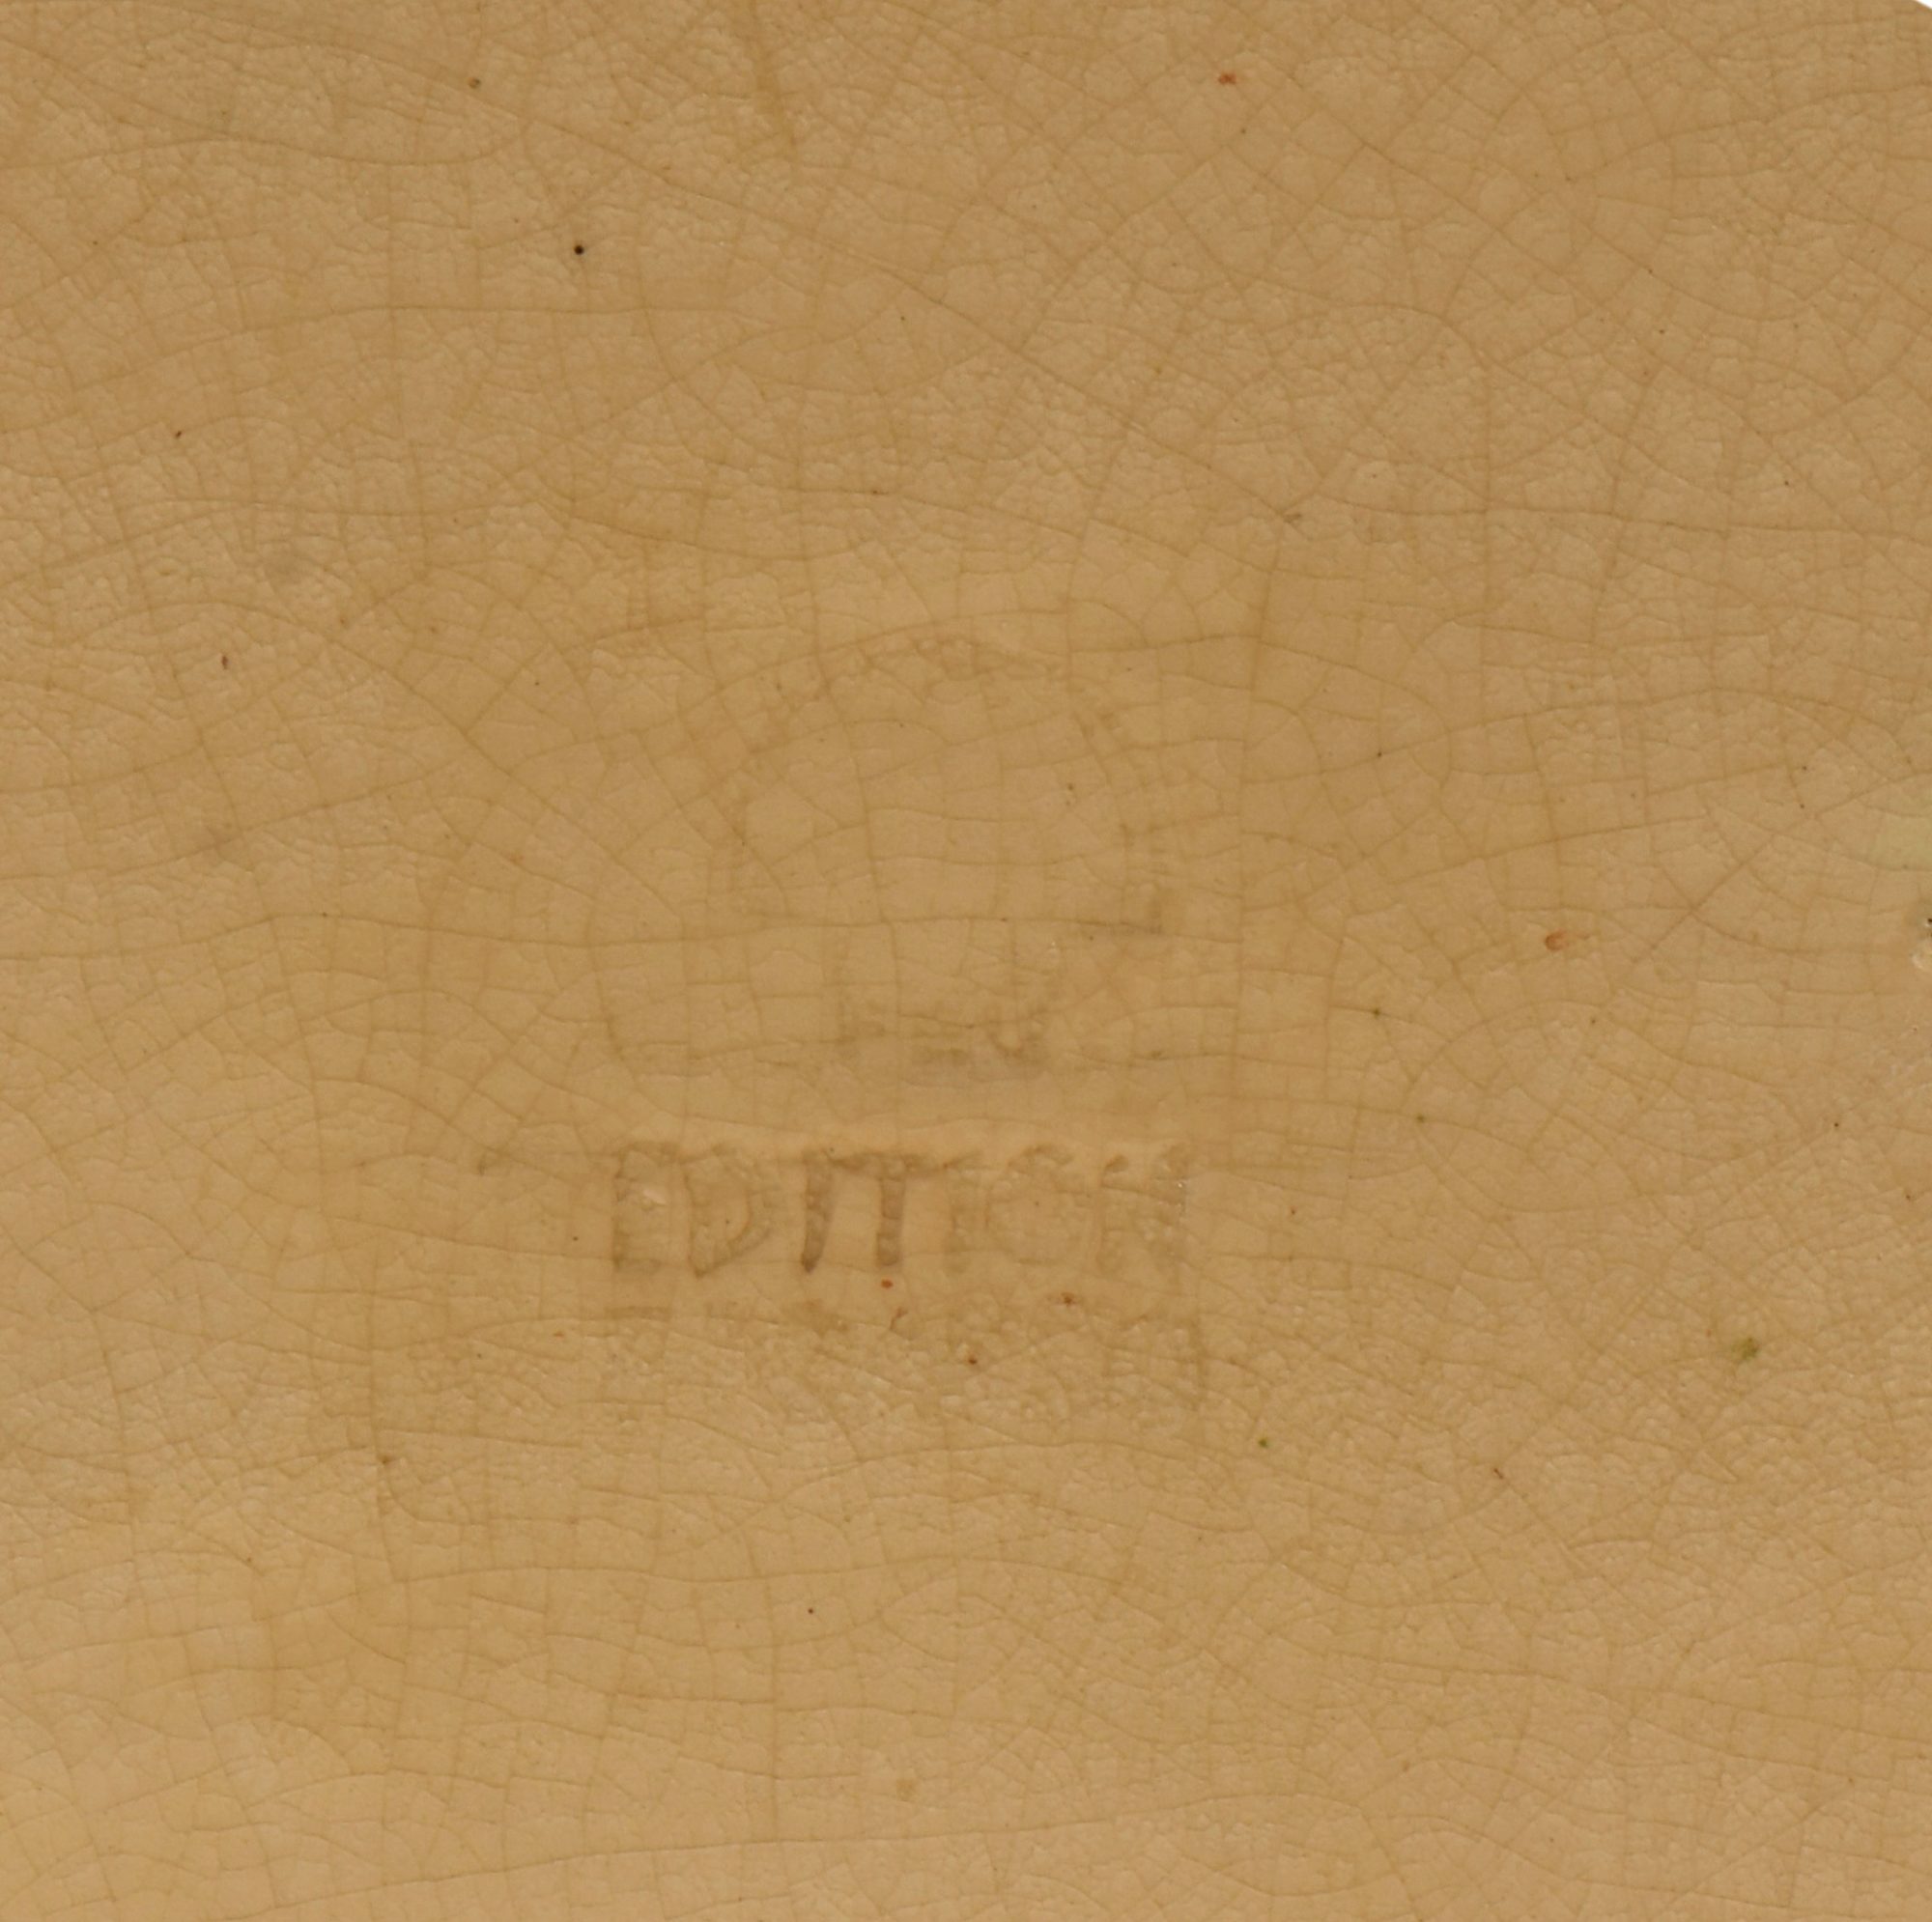 Detail stamp